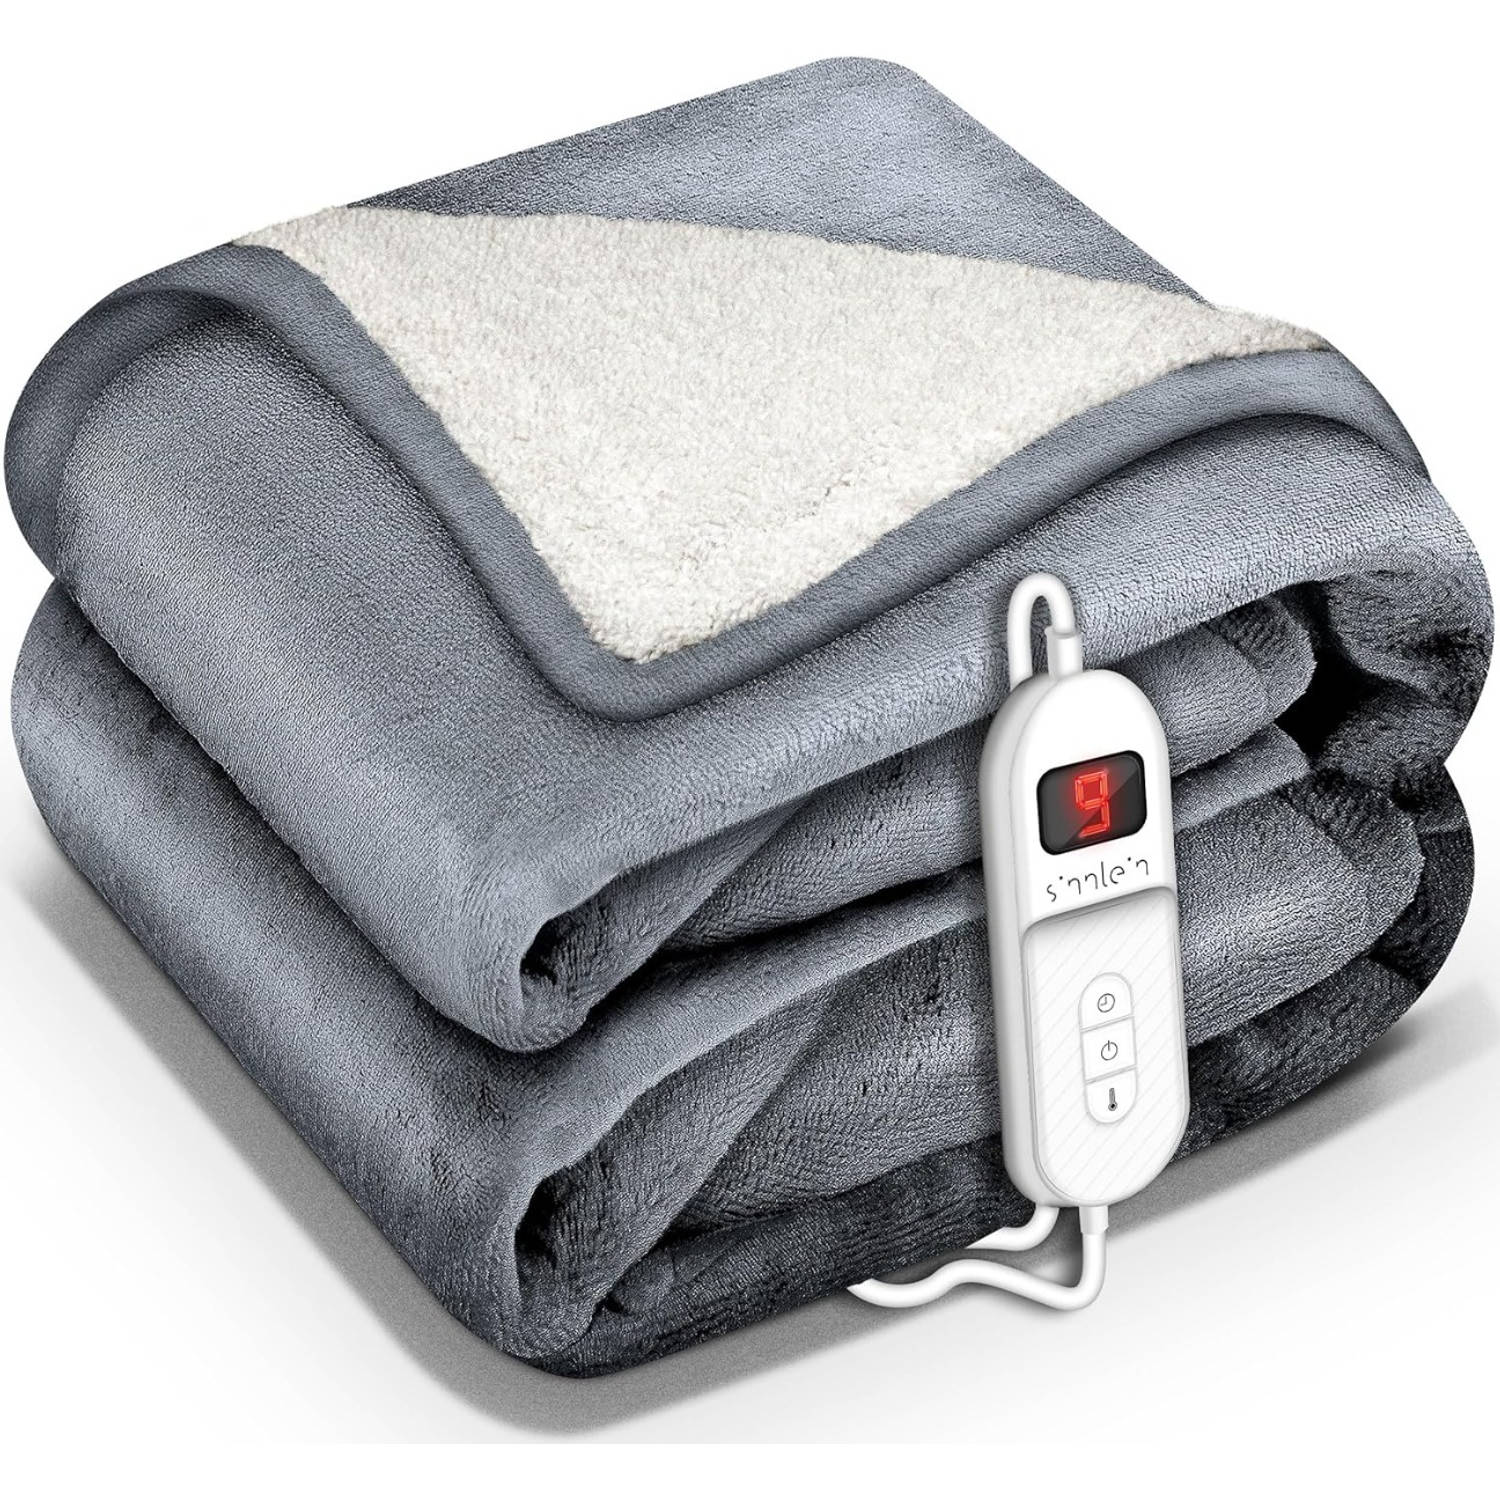 Sinnlein- Elektrische deken met automatische uitschakeling, lichtgrijs, 180x130 cm, warmtedeken met 9 temperatuurnive...